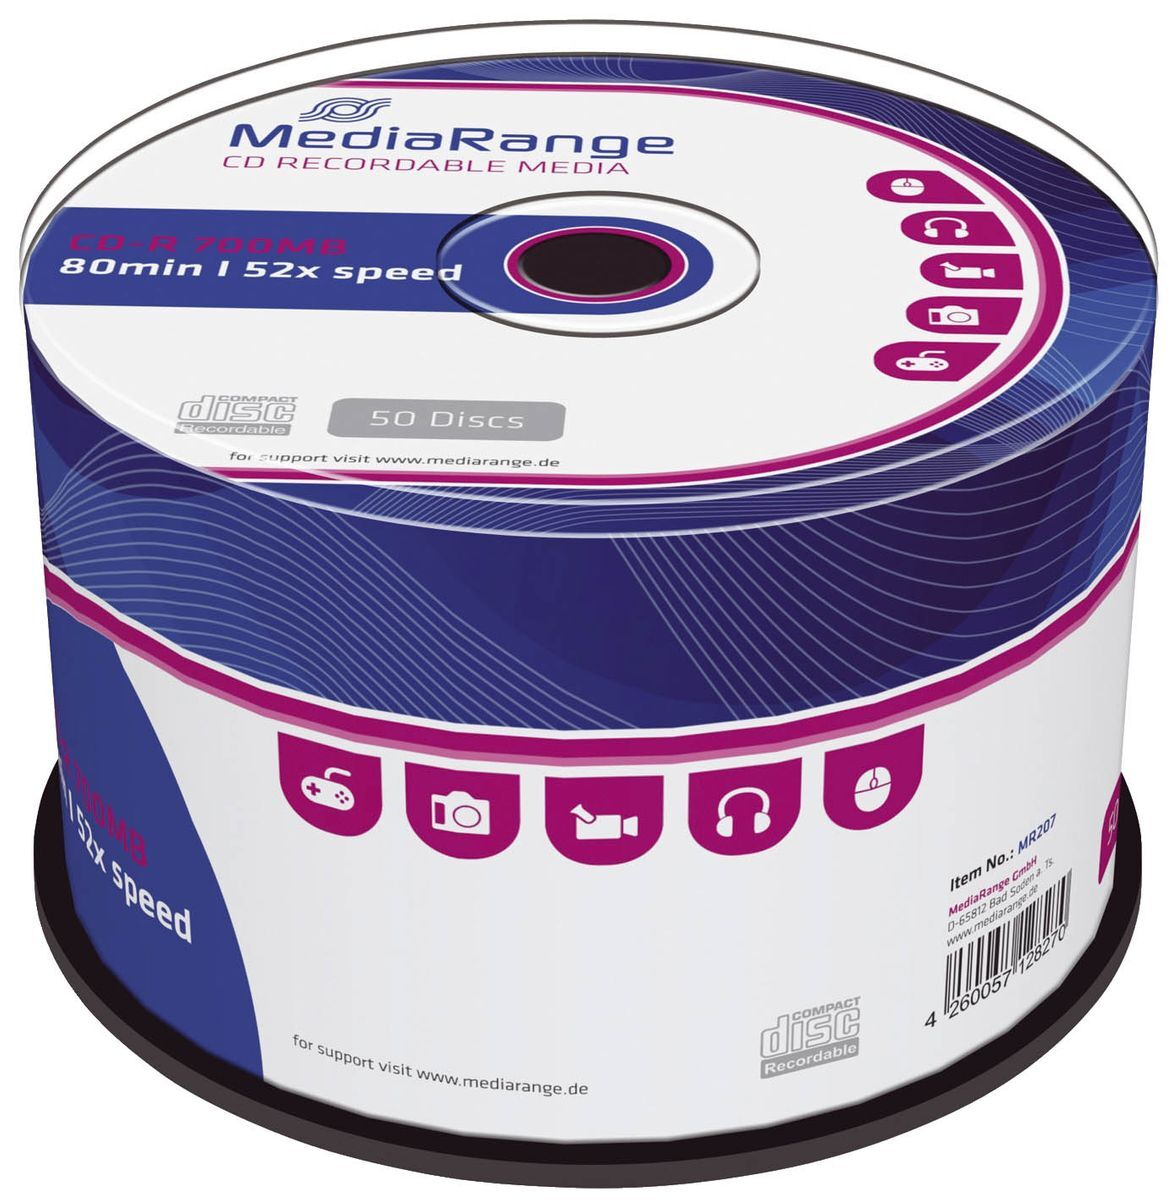 CD-R Rohlinge - 700MB/80Min, 52-fach/Spindel, Packung mit 50 Stück, MR207